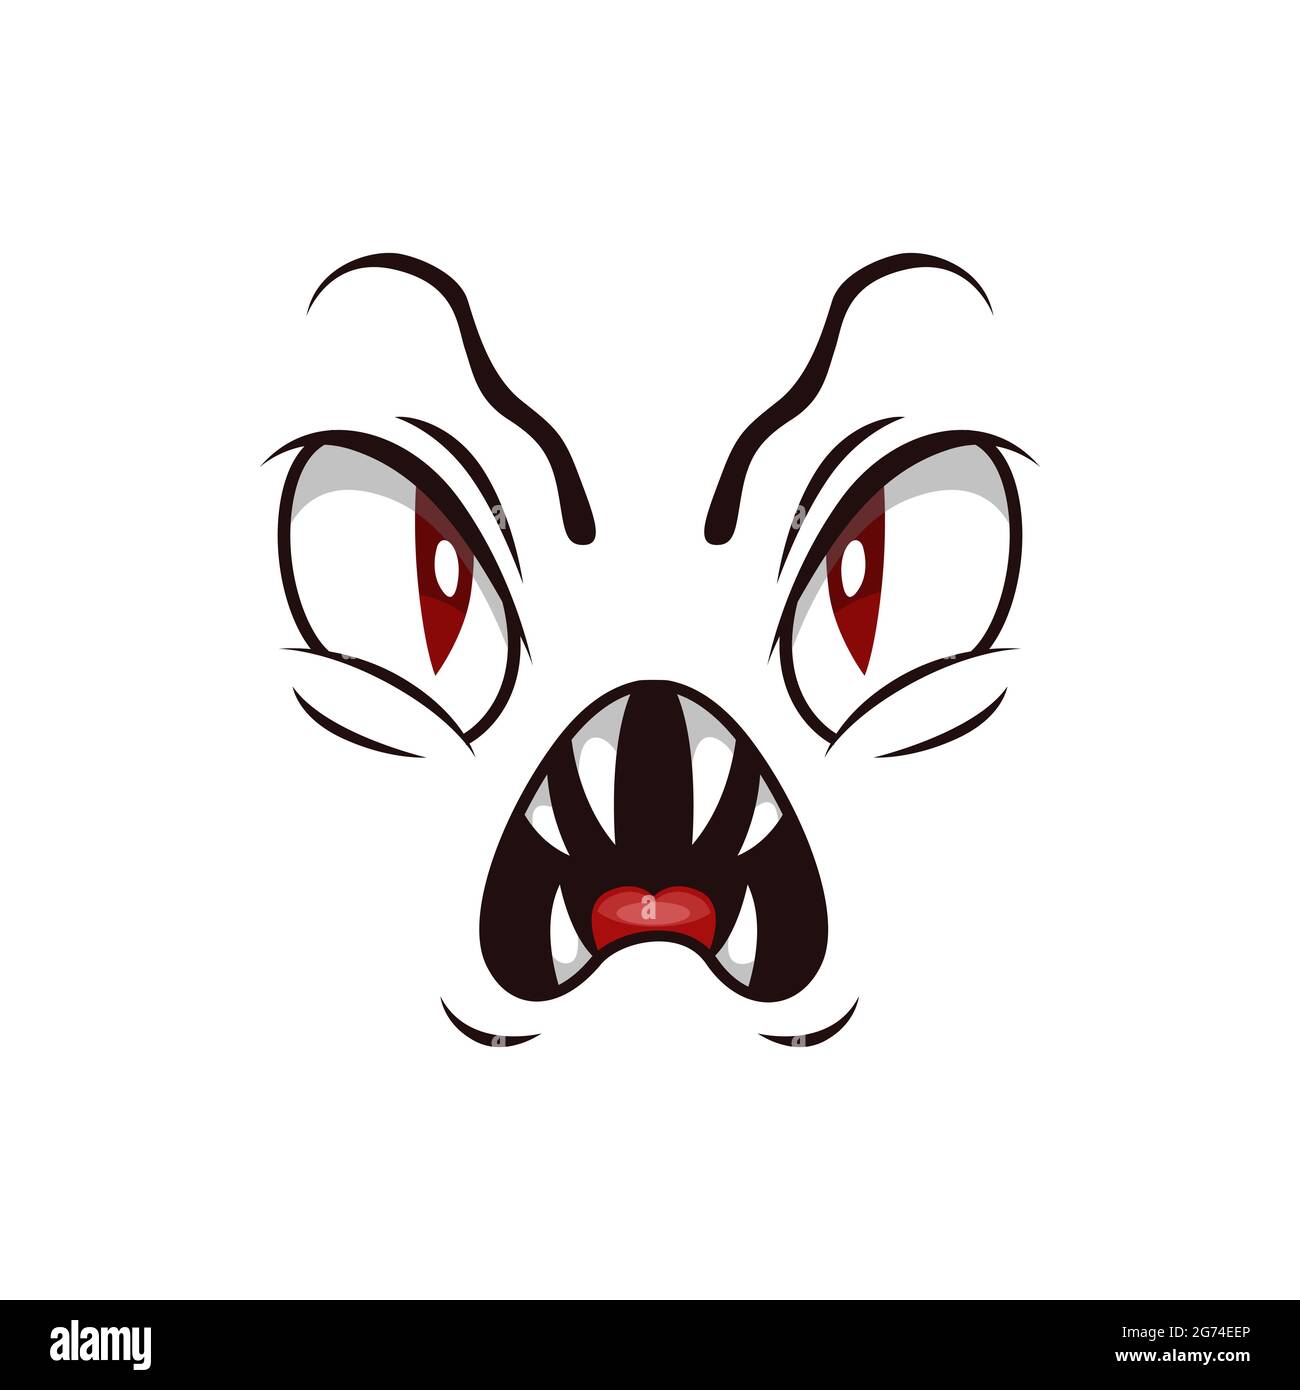 Icône de vecteur isolé face de monstre, emoji de bande dessinée du démon en colère, émotion de créature effrayante d'Halloween. Un diable arnaquant avec des fangs pointus et des yeux rouges créeppés Illustration de Vecteur